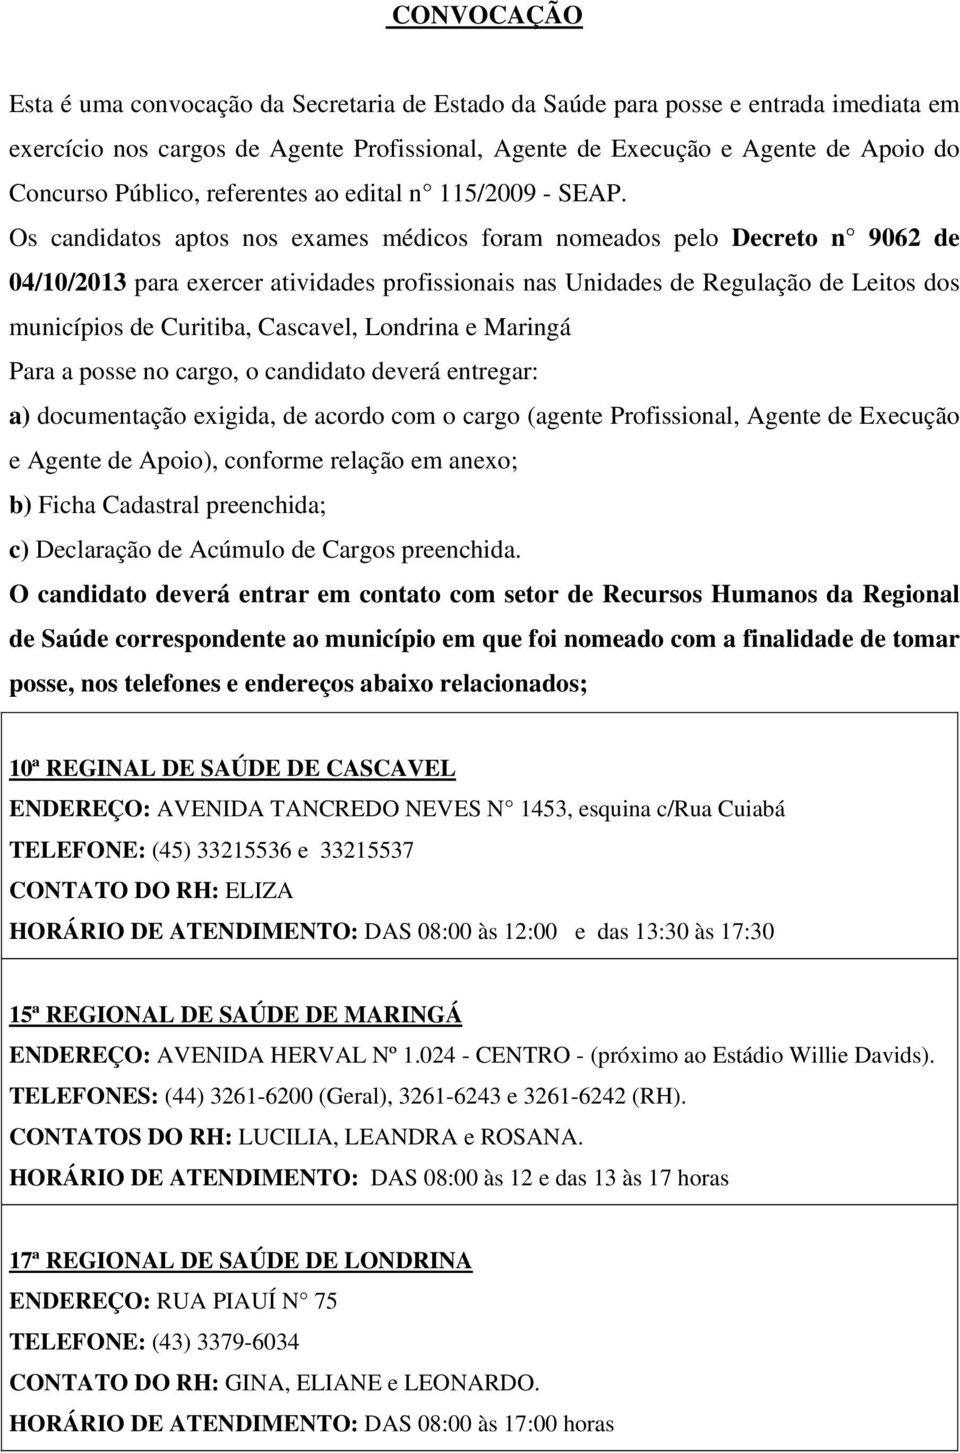 Os candidatos aptos nos exames médicos foram nomeados pelo Decreto n 9062 de 04/10/2013 para exercer atividades profissionais nas Unidades de Regulação de Leitos dos municípios de Curitiba, Cascavel,